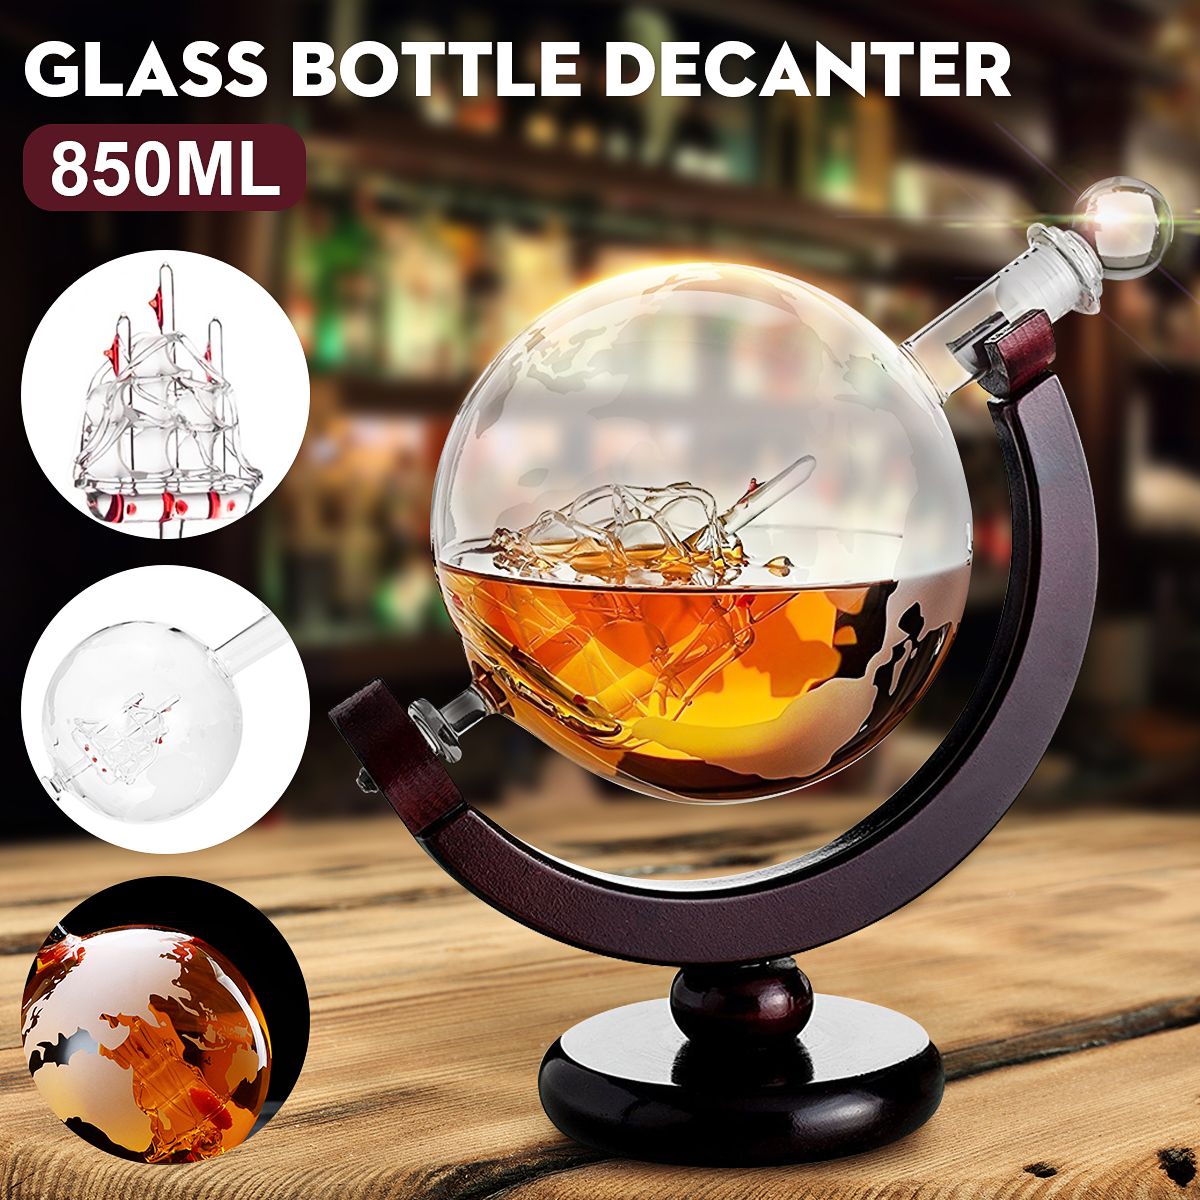 850ml-Glass-Decanter-Globe-Liquor-Gifts-Whiskey-Bottle-Large-Capacity-Bottle-Spirits-1563264-1